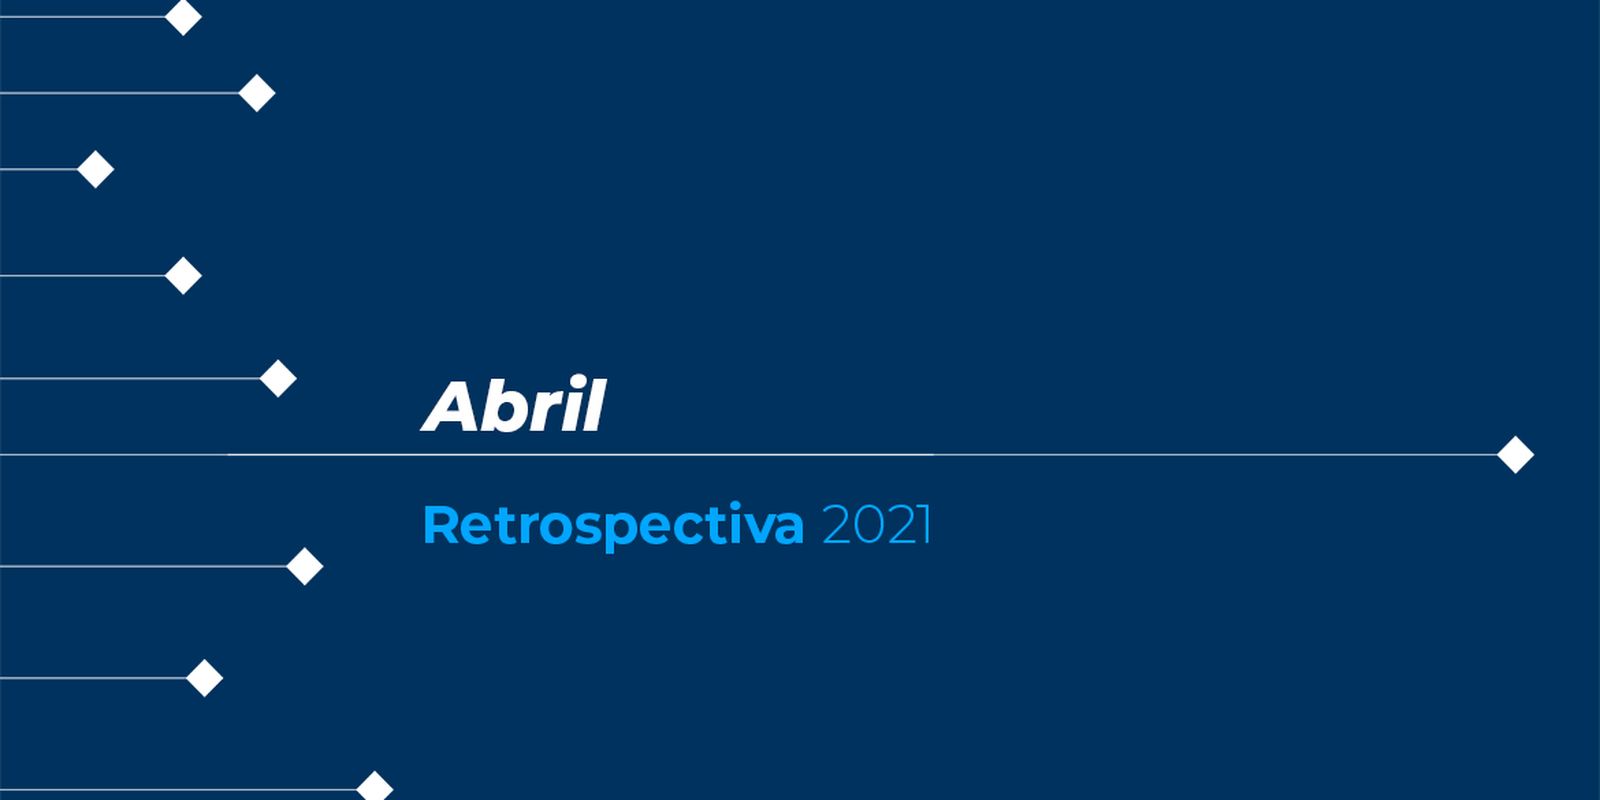 Retrospectiva 2021: confira as principais notícias de abril